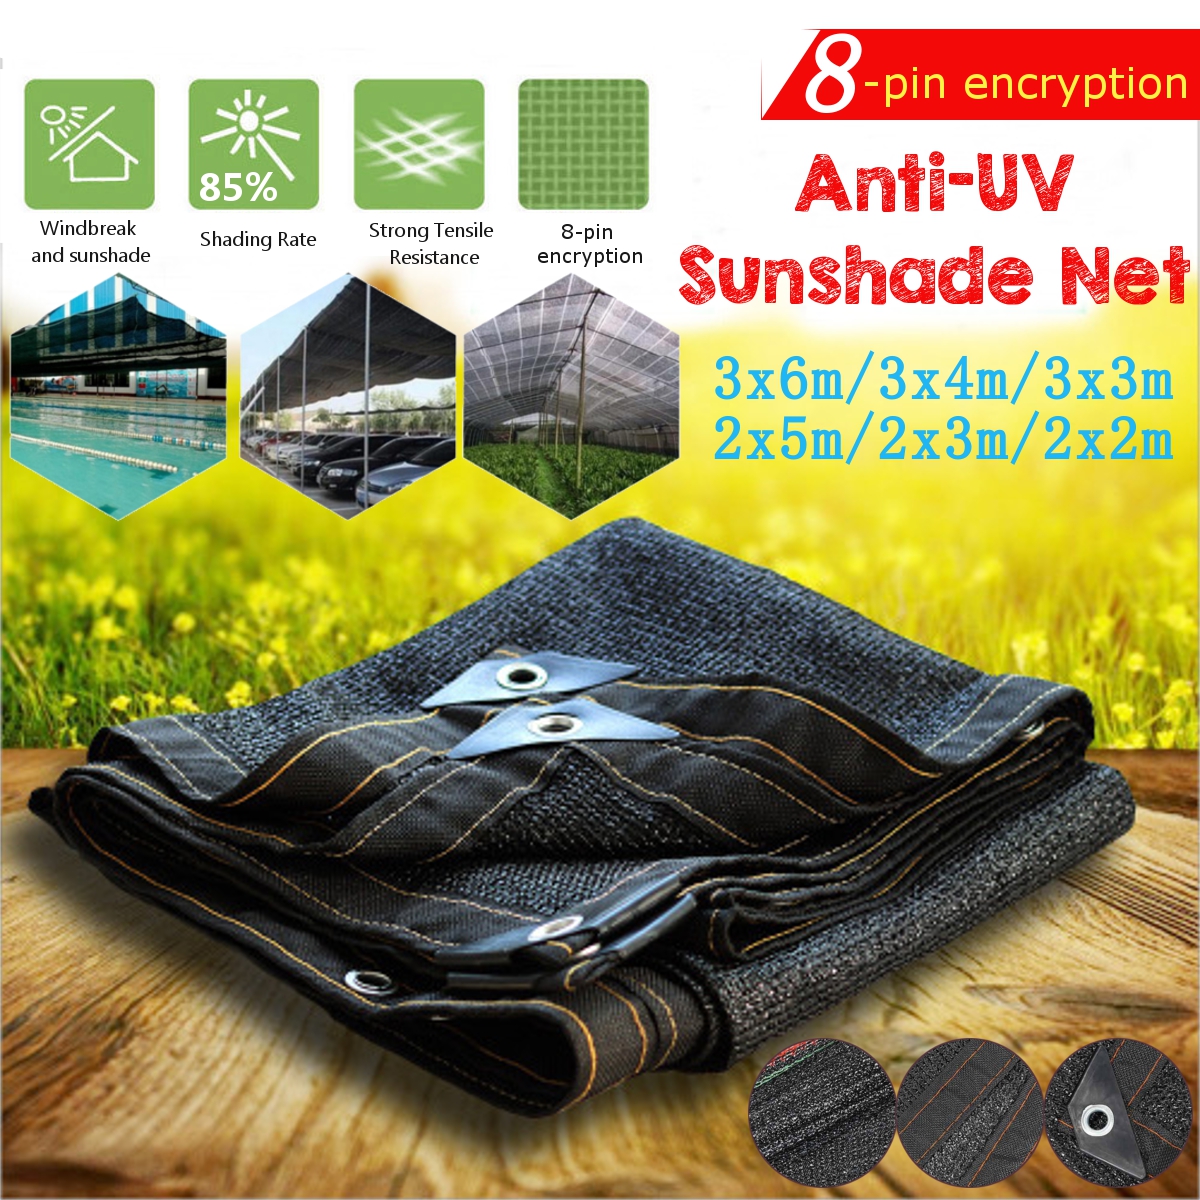 HDPE Anti-UV Sunshade Net Outdoor Garden Car Cover Sunscreen Cloth Protector